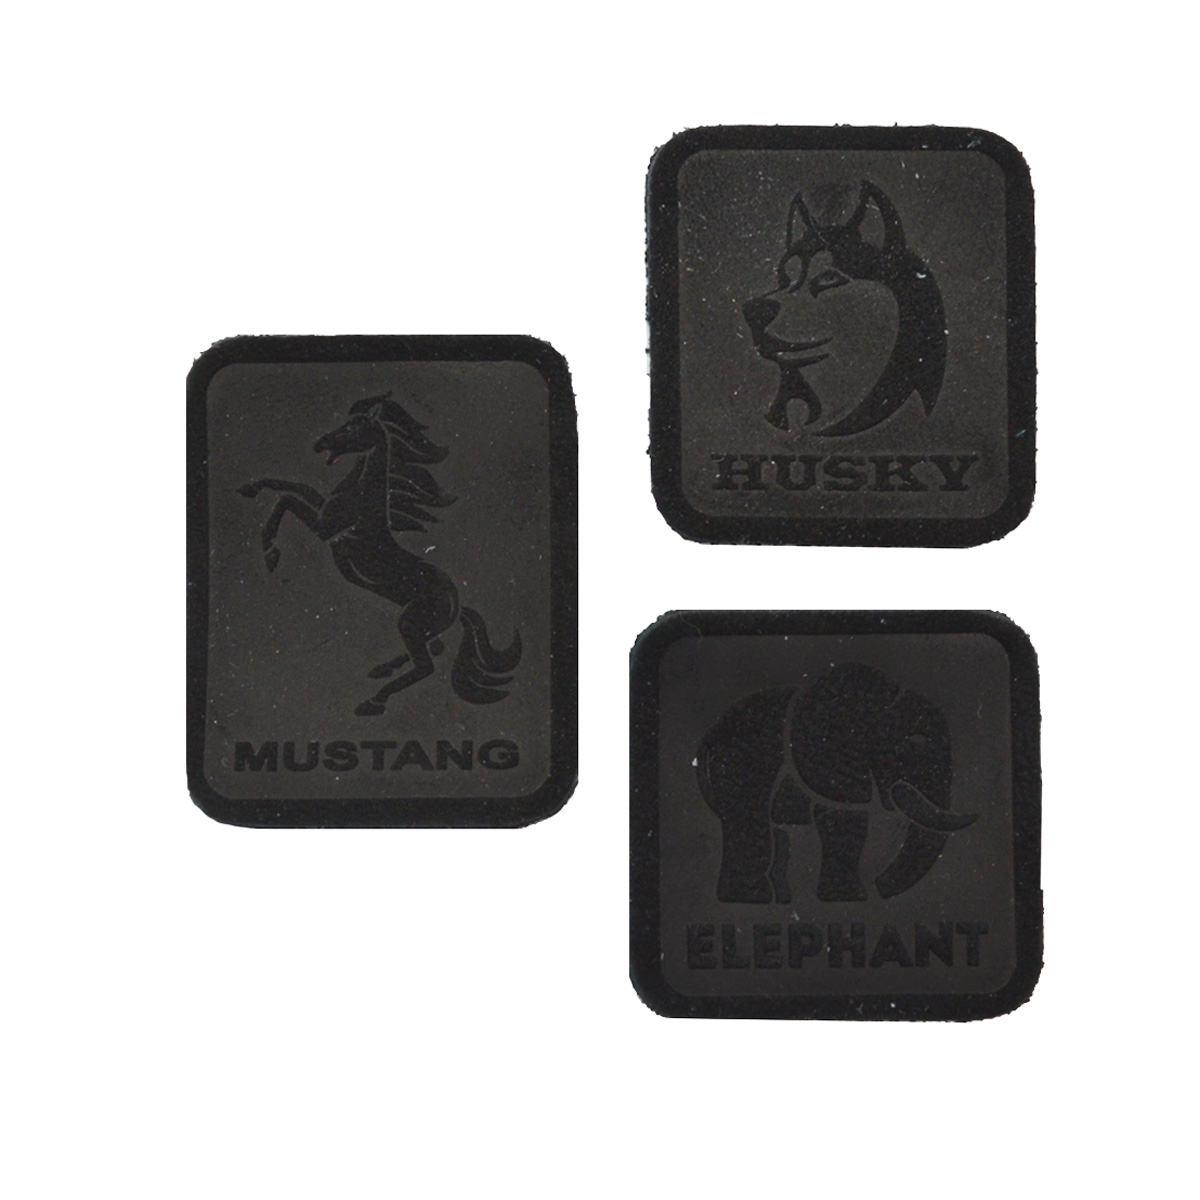 5006 Набор термоаппликаций из замши: Husky, Mustang, Elephant (433 черный), 3 шт